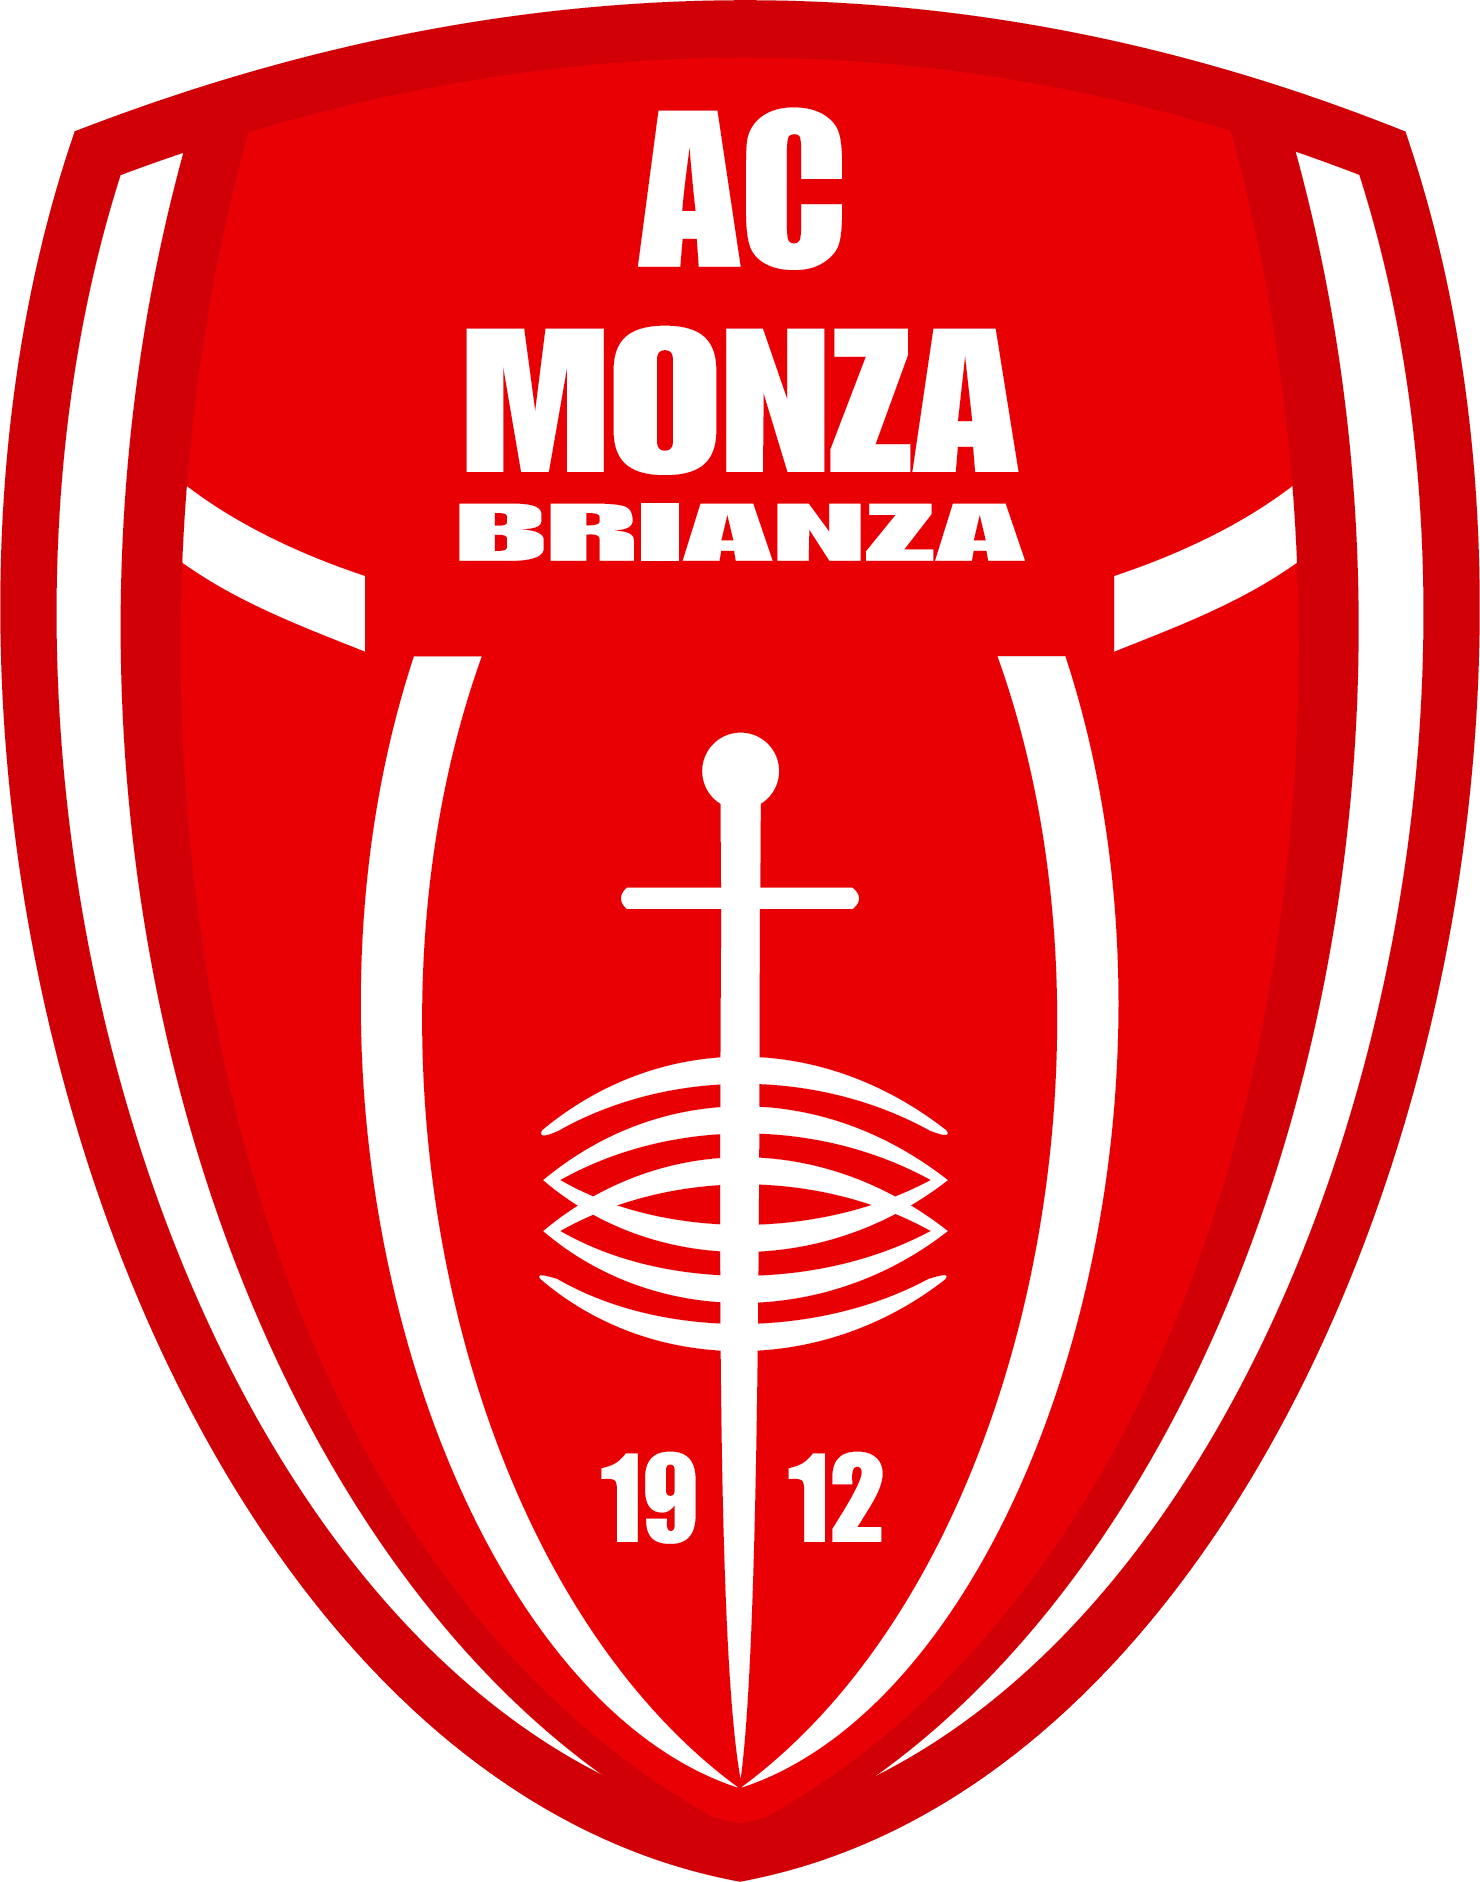 Napoli vs Monza Prediction: Monza will likely take advantage